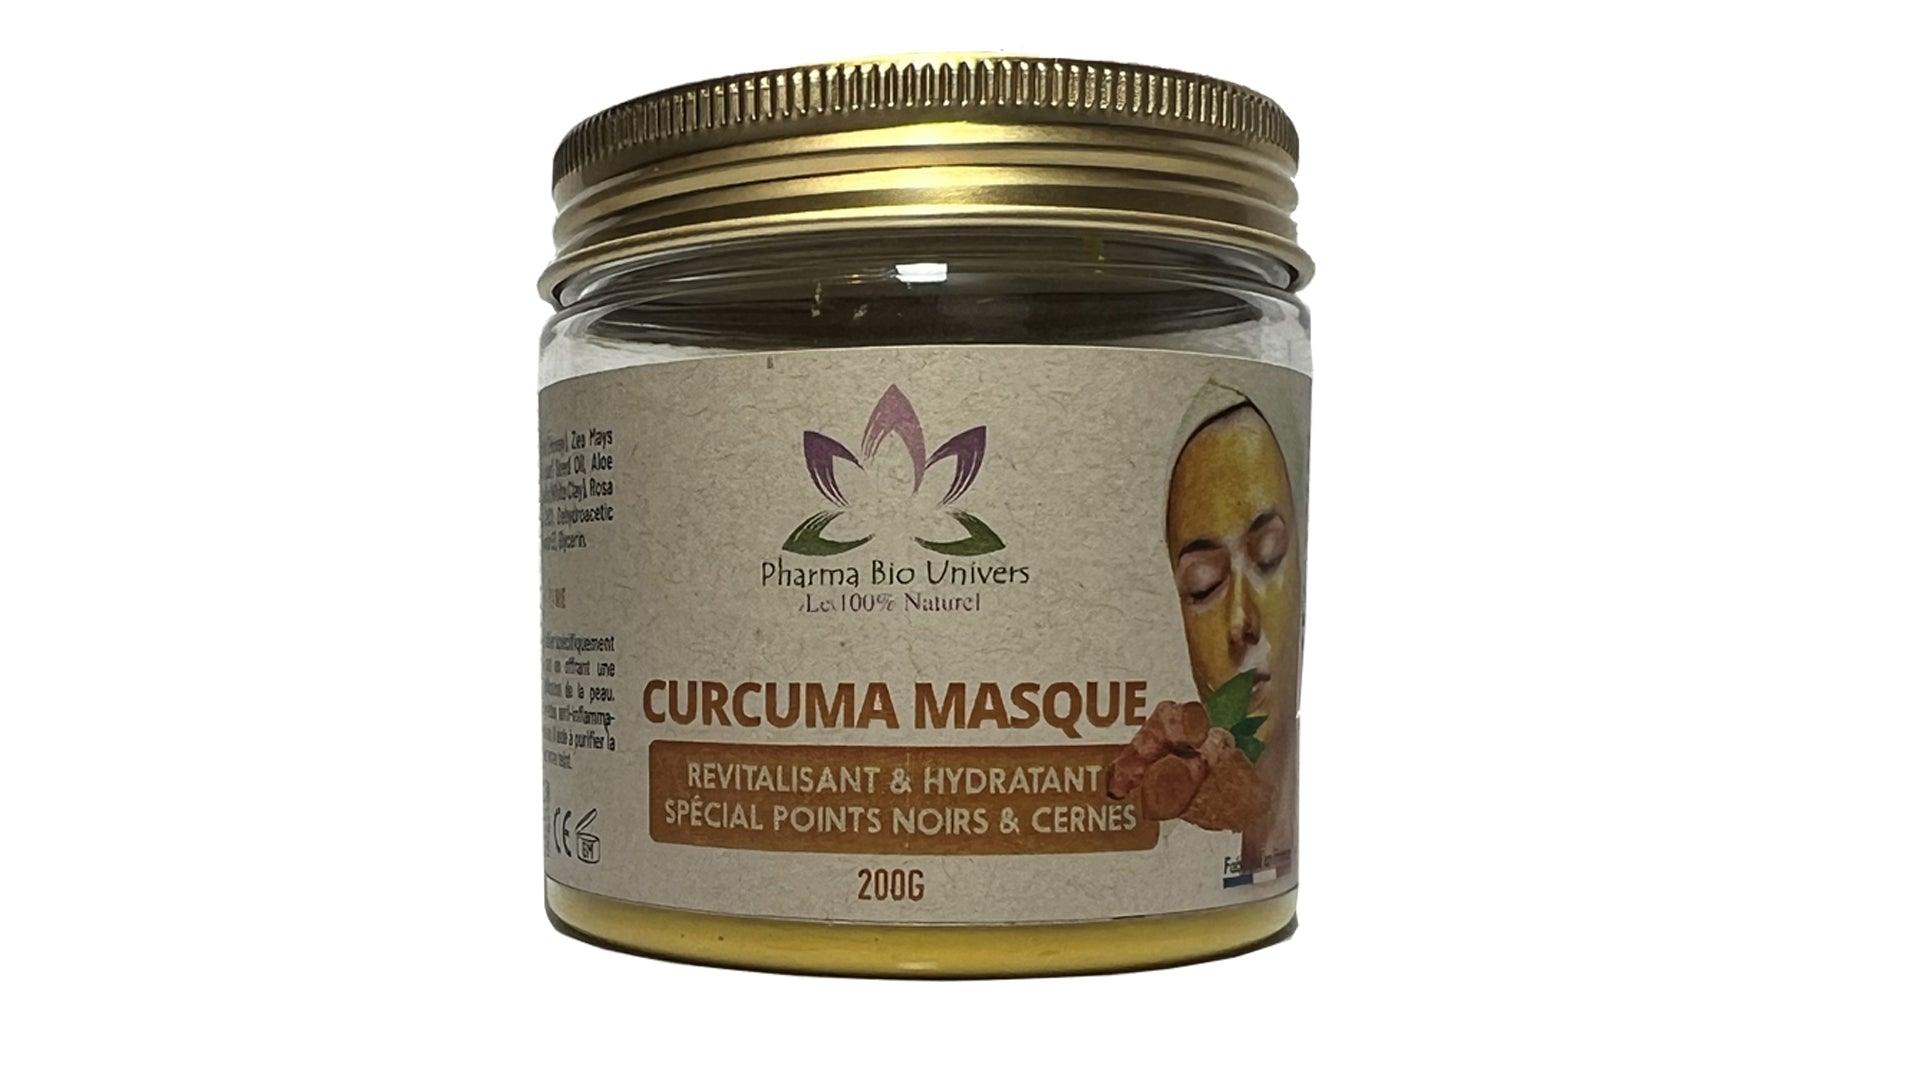 Image du Masque au Curcuma, un soin revitalisant et hydratant spécialement conçu pour cibler les points noirs et les cernes, pour une peau éclatante.